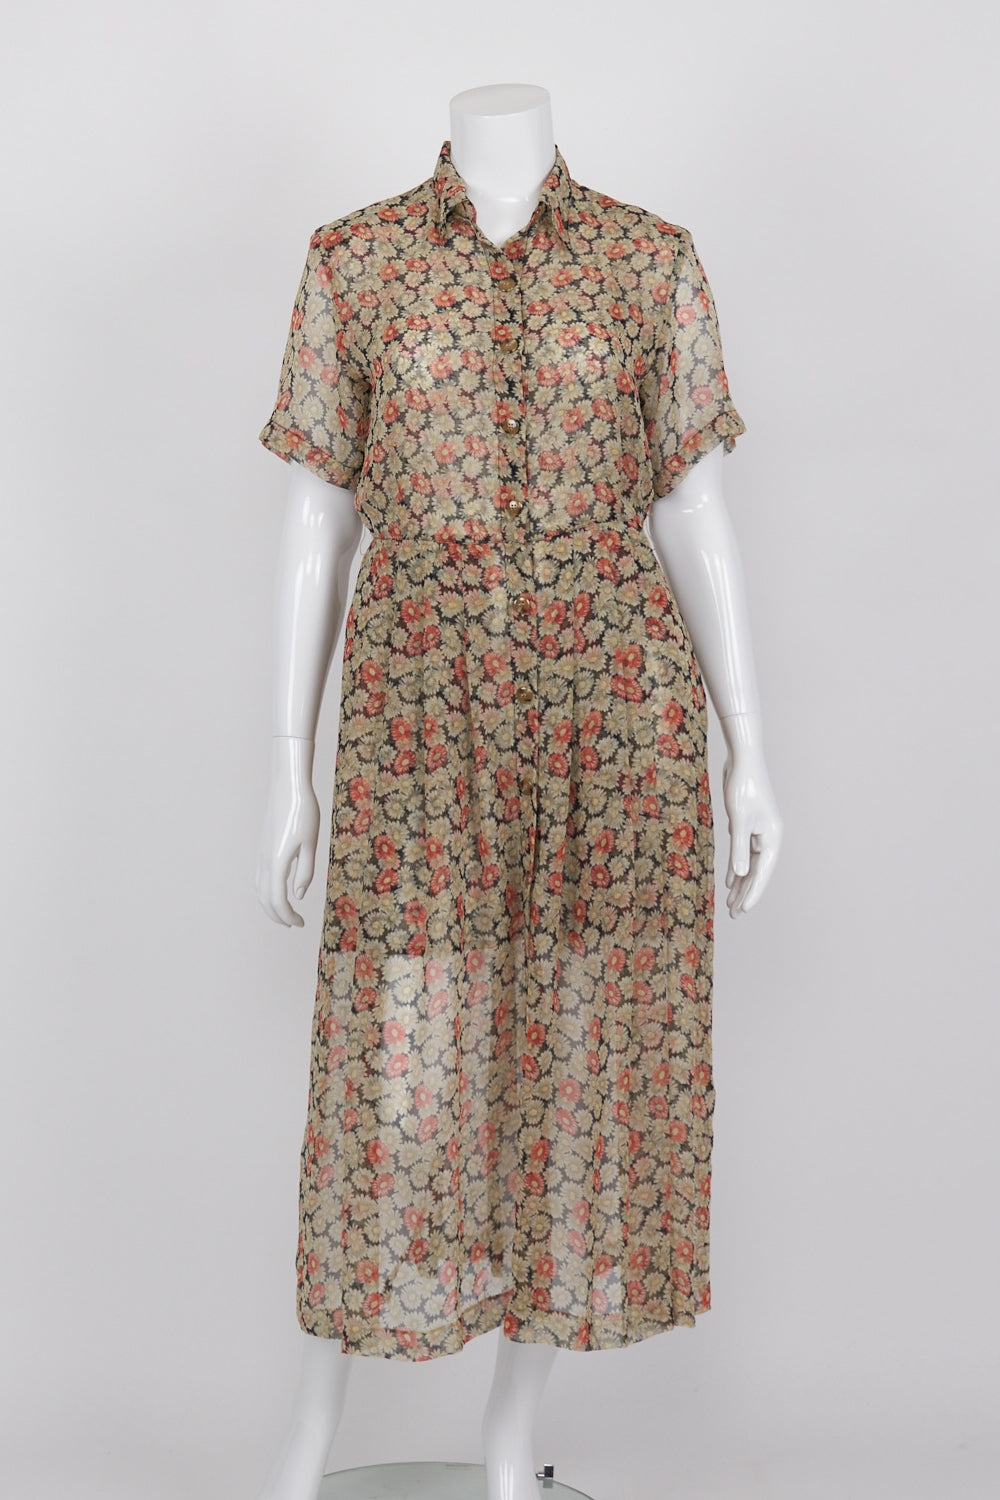 Lisa Ho Vintage Floral Sheer Maxi Dress 14